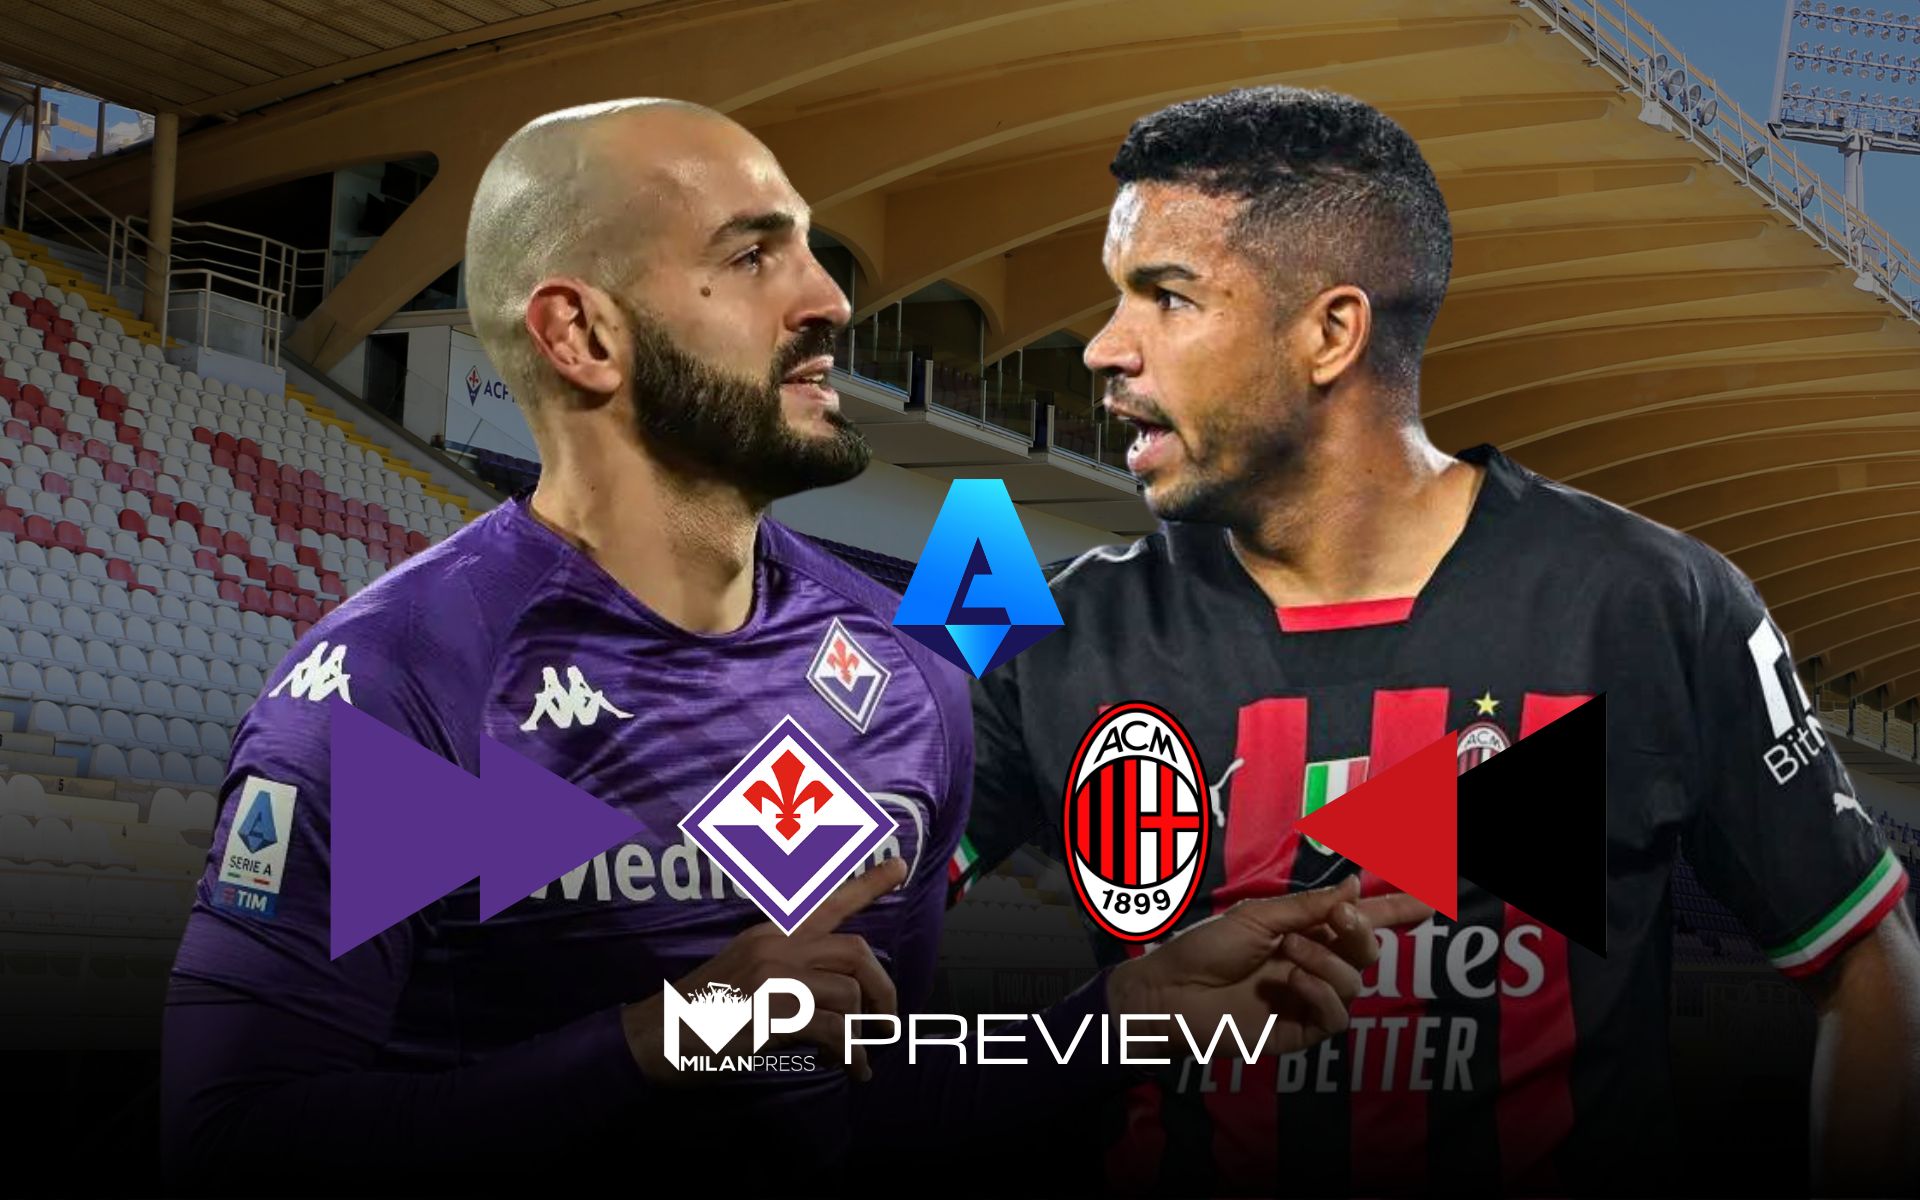 Fiorentina-Milan Preview - MilanPress, robe dell'altro diavolo